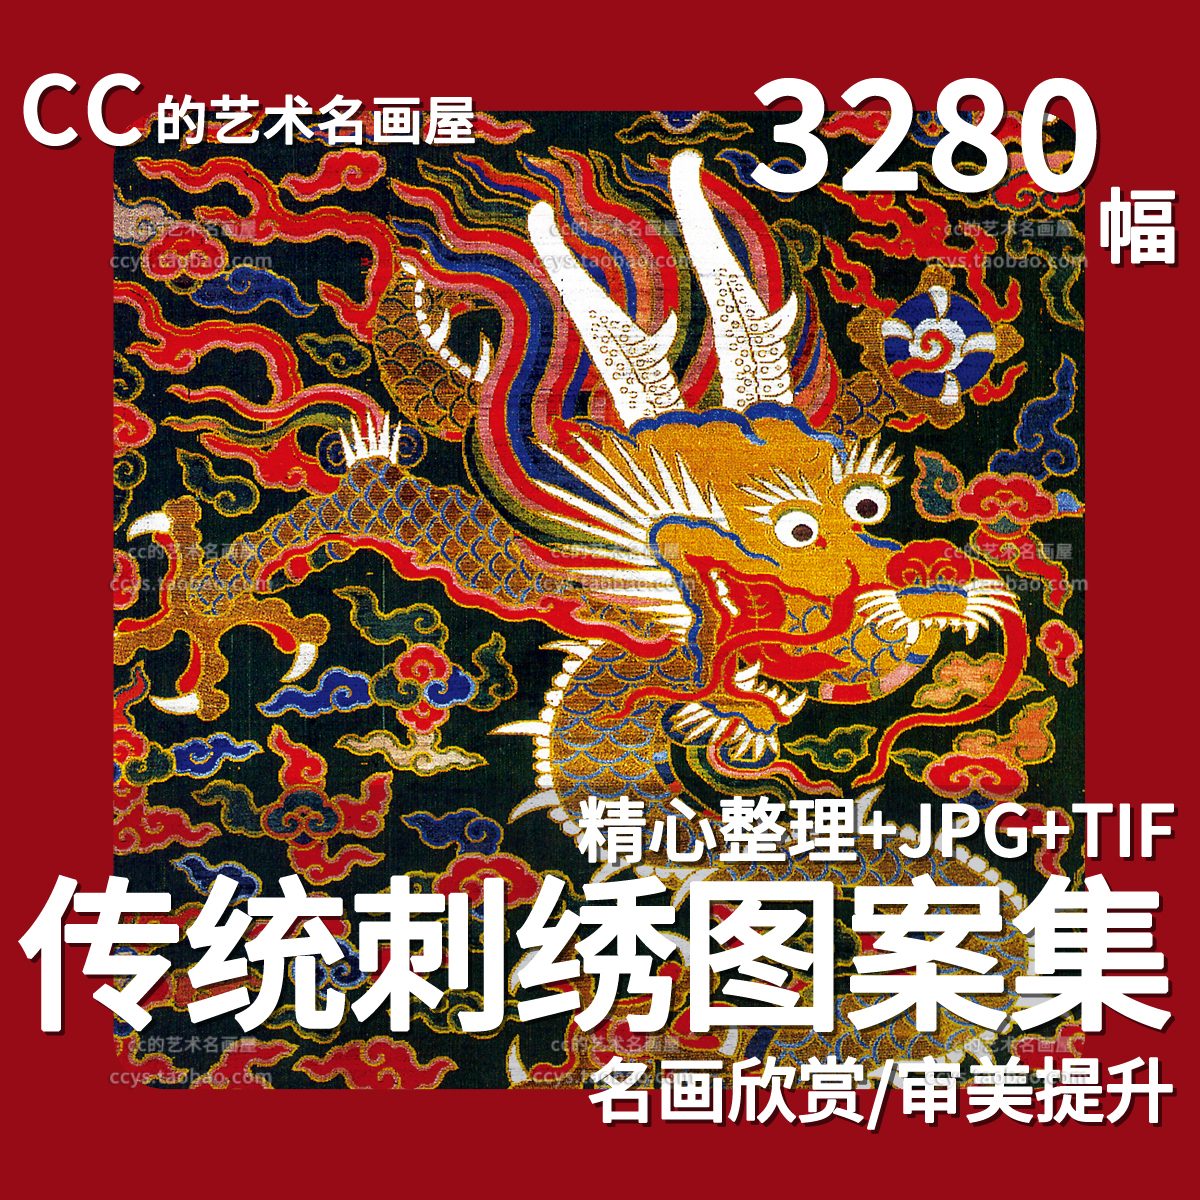 中国传统服饰纹样图案古代古典龙凤花鸟刺绣织绣参考设计图片素材